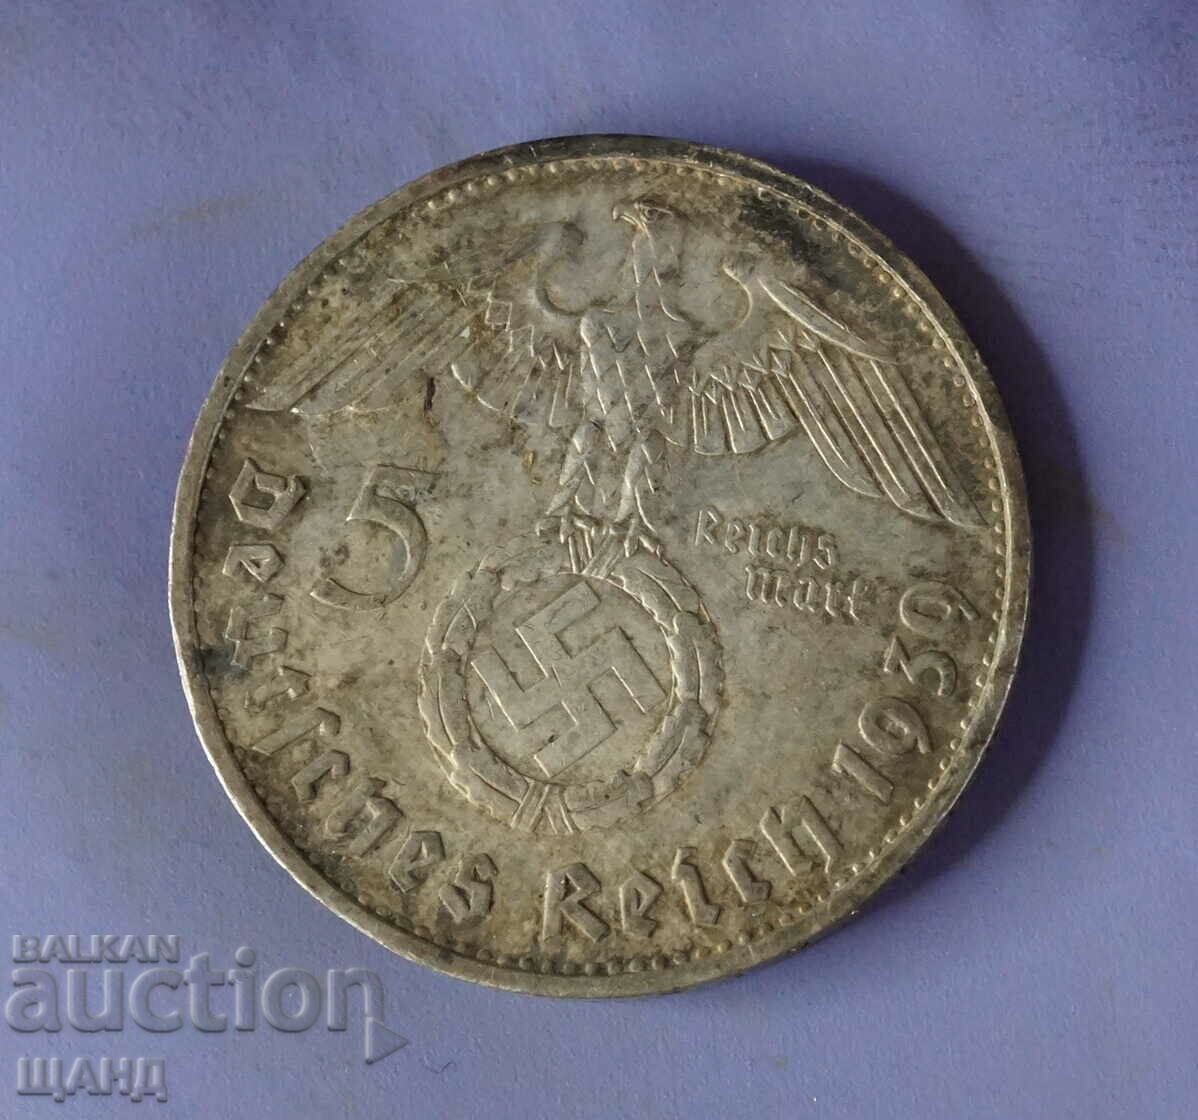 1939  Германия сребърна монета 5 марки